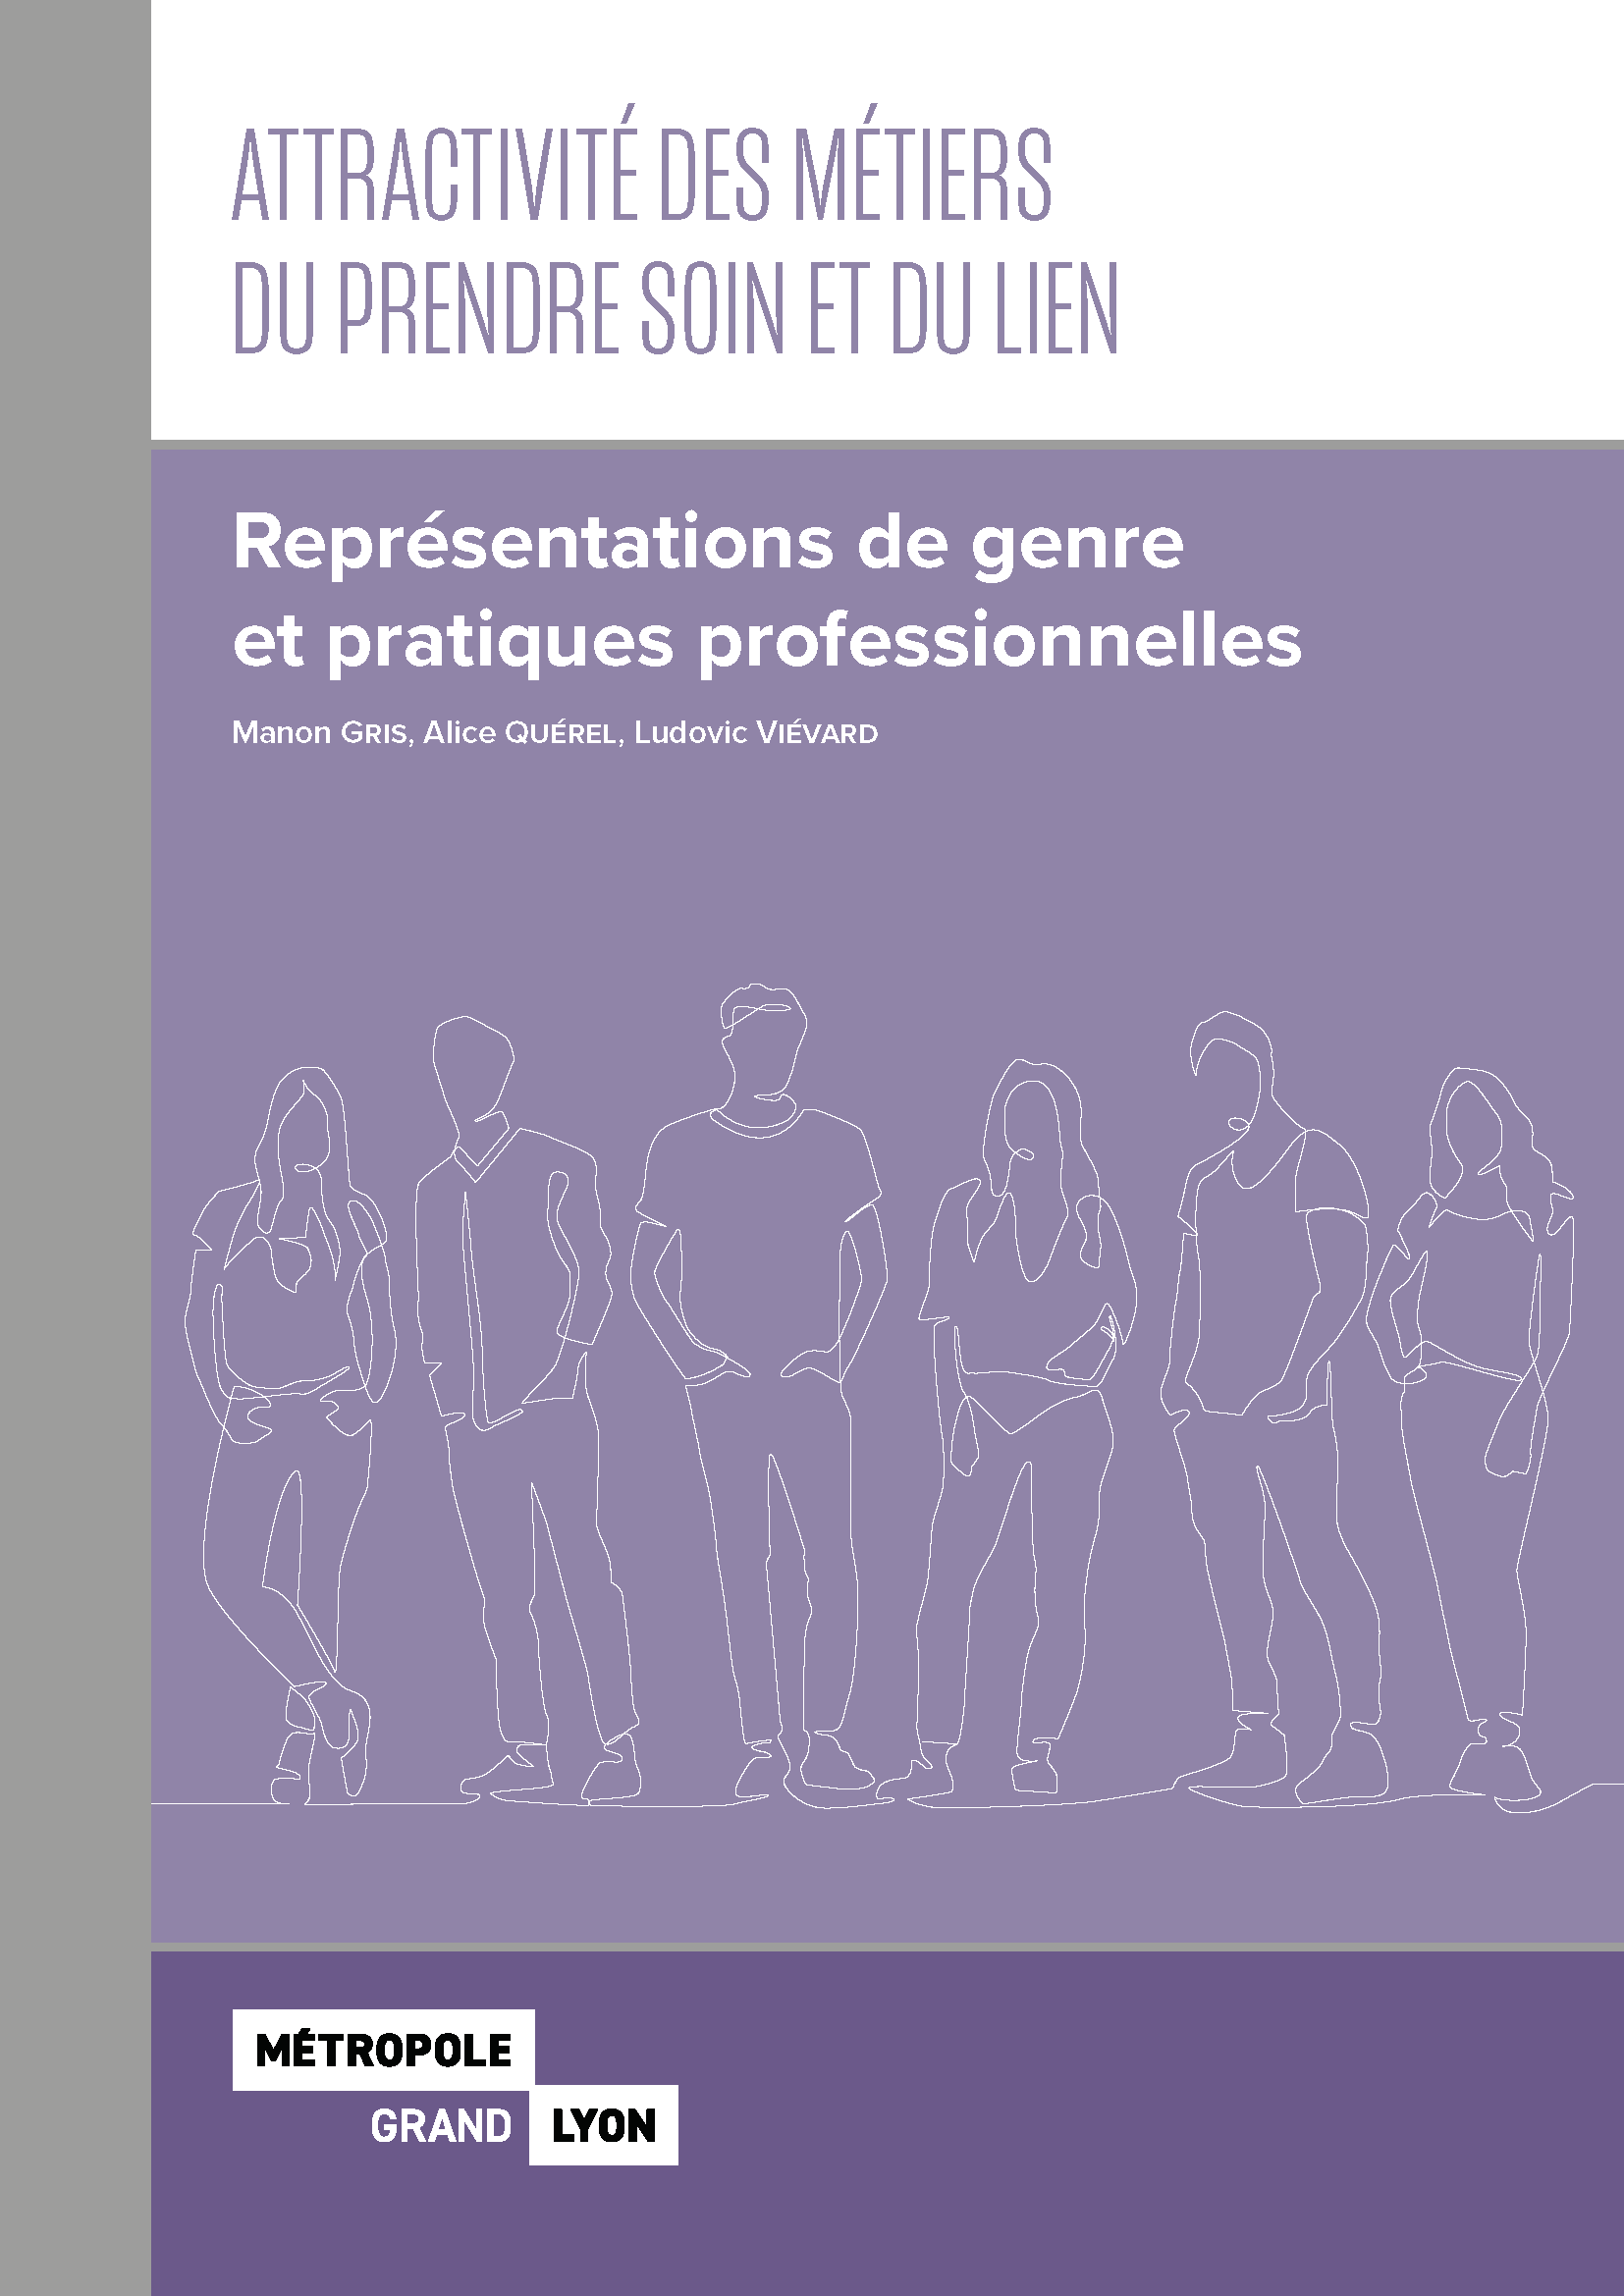 Attractivité des métiers du prendre soin et du lien : Représentations de genre et pratiques professionnelles